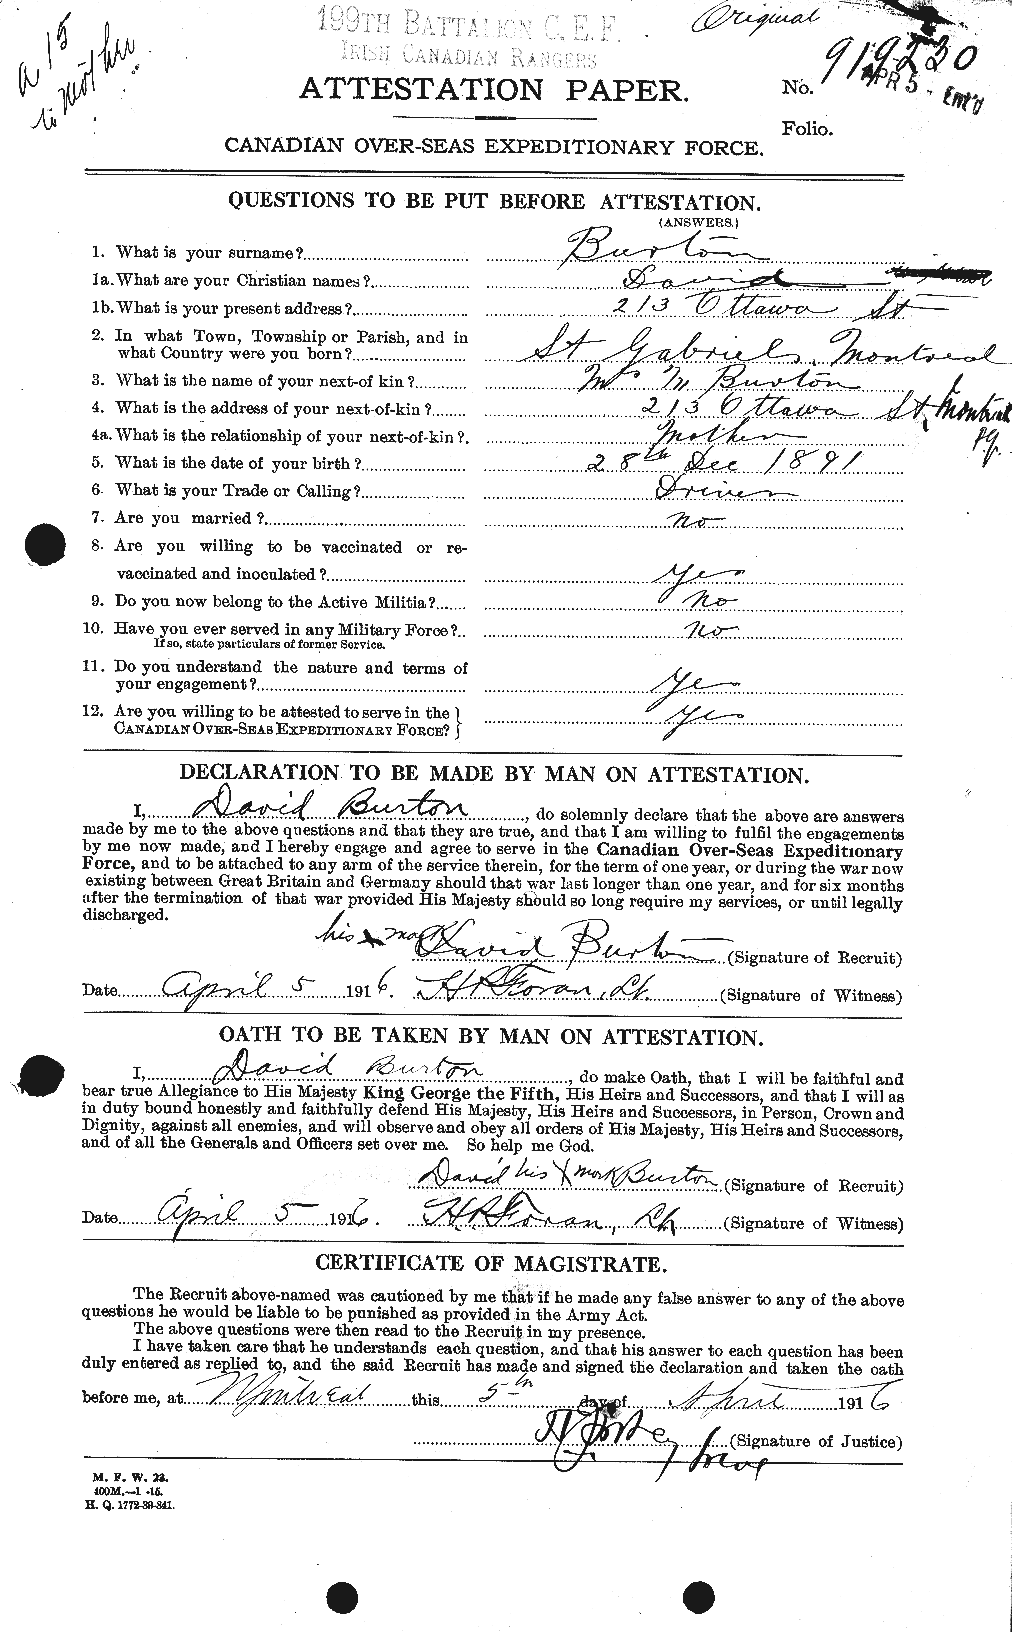 Dossiers du Personnel de la Première Guerre mondiale - CEC 271436a